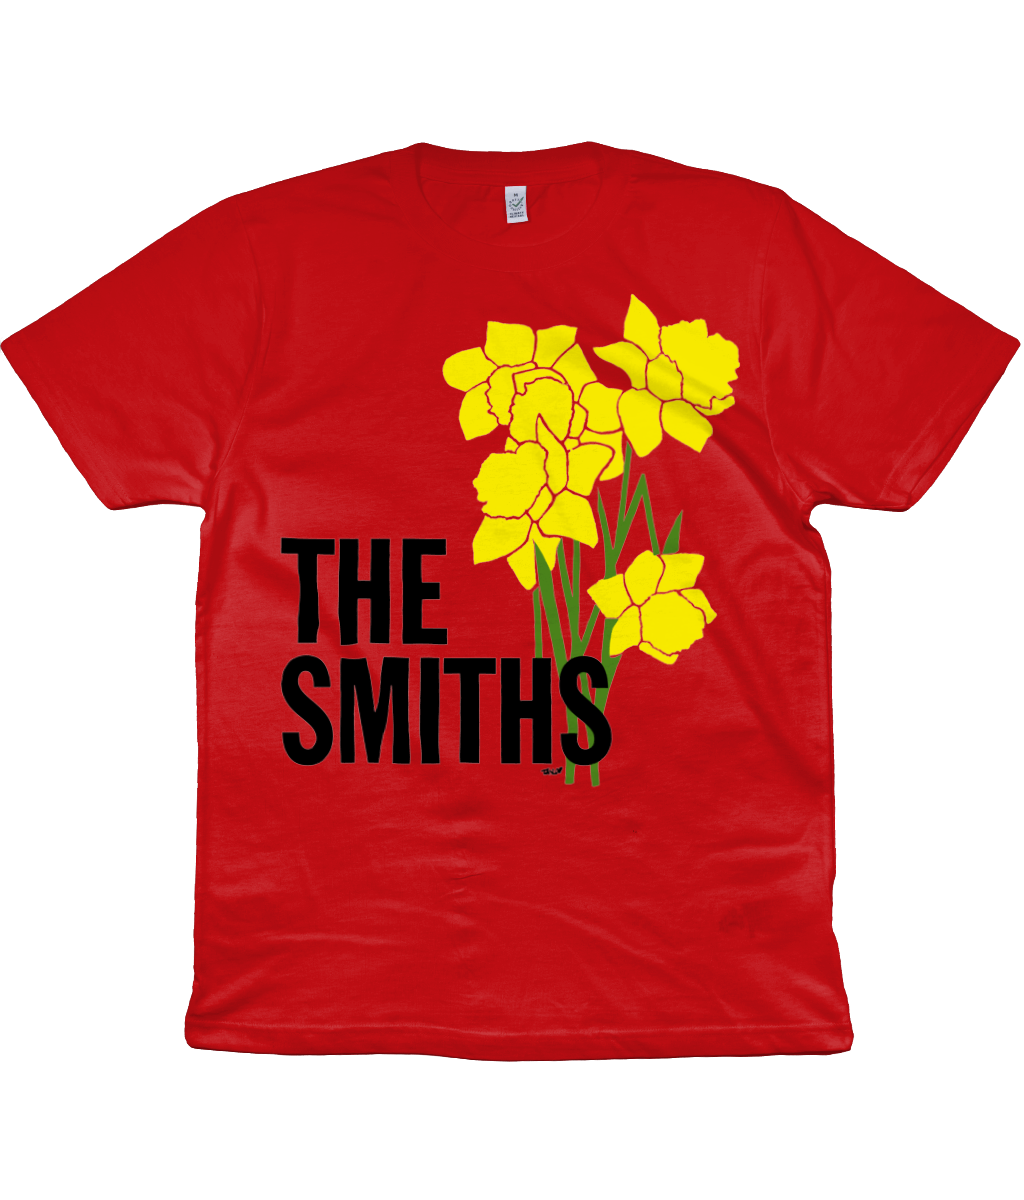 THE SMITHS - UK Tour - 1983